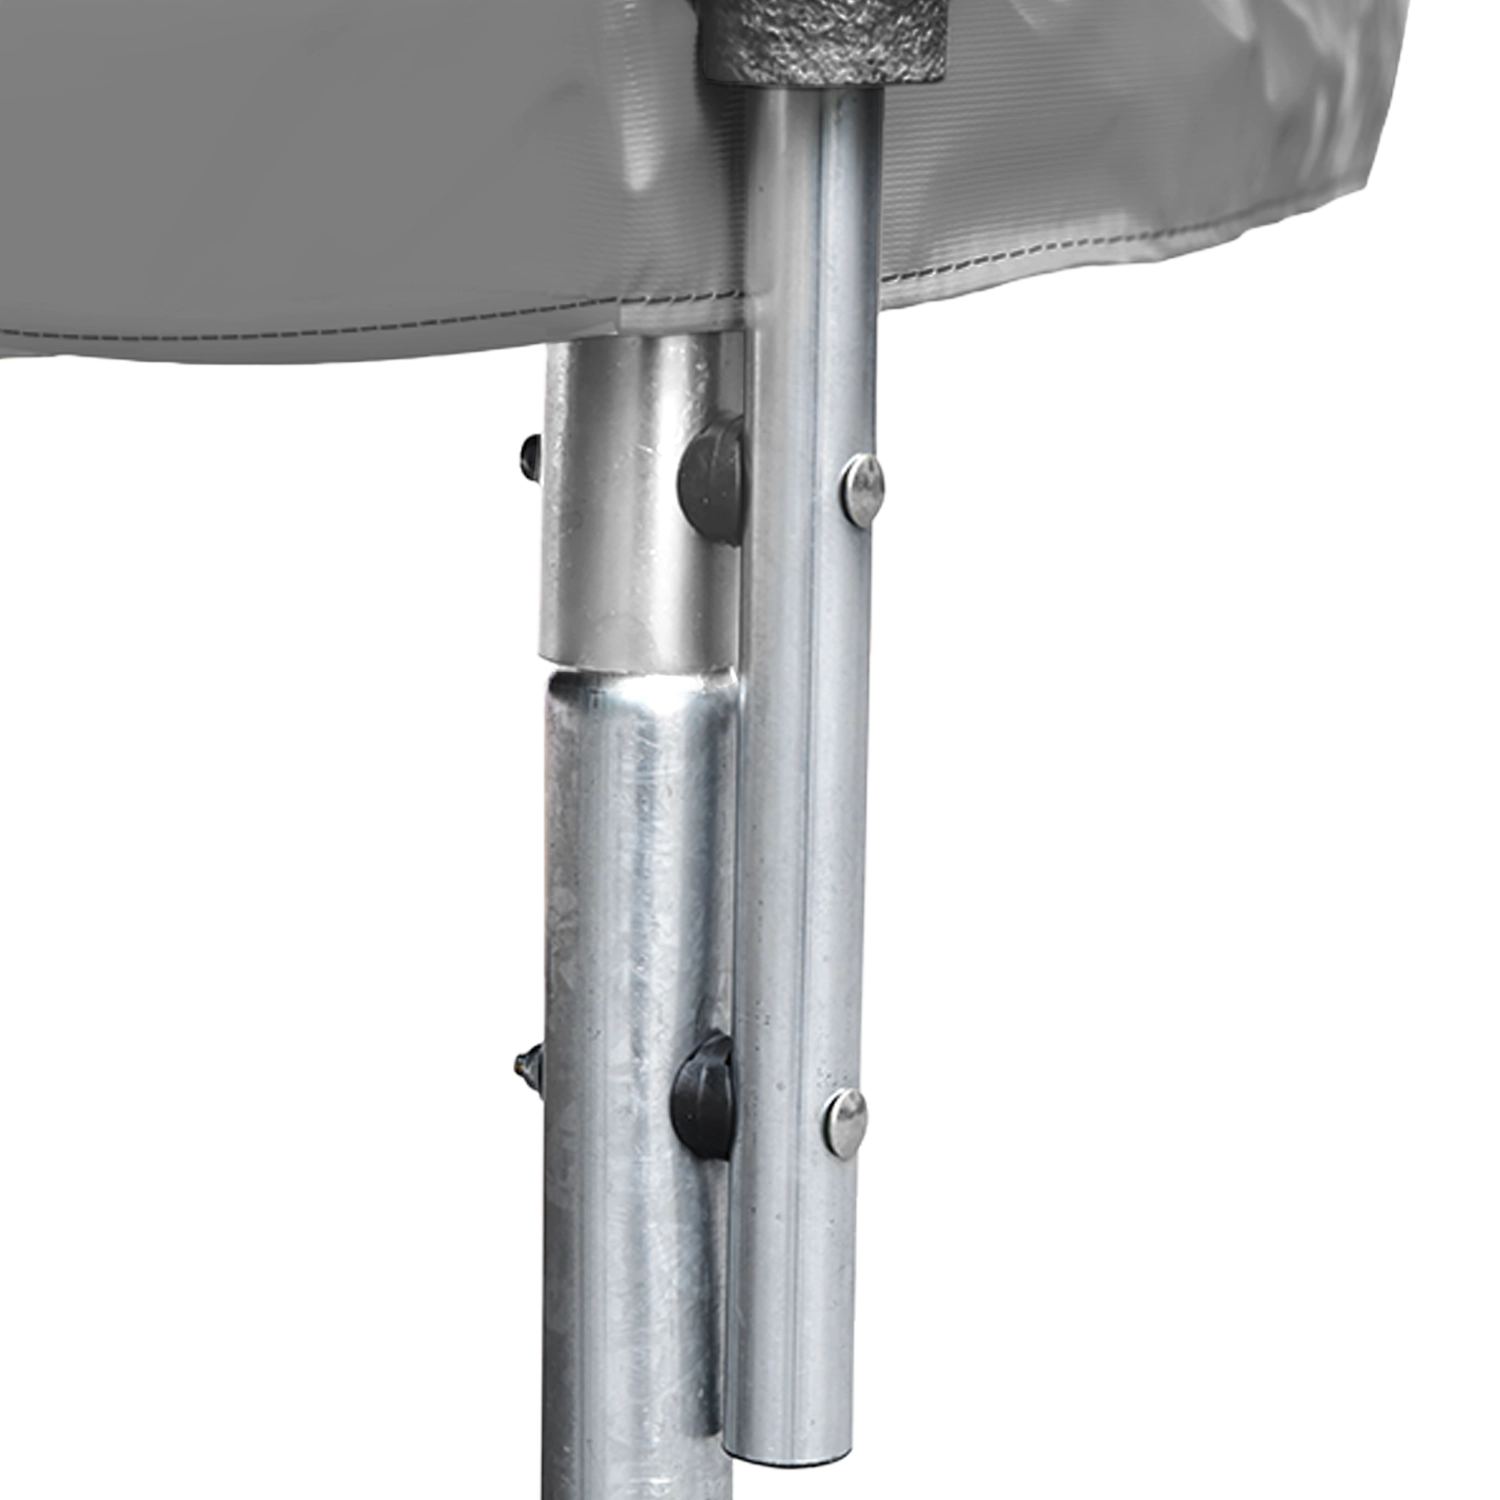 Premium Pack Trampolino 305cm reversibile grigio/rosa ADELAÏDE + rete, scala, copertura e kit di ancoraggio